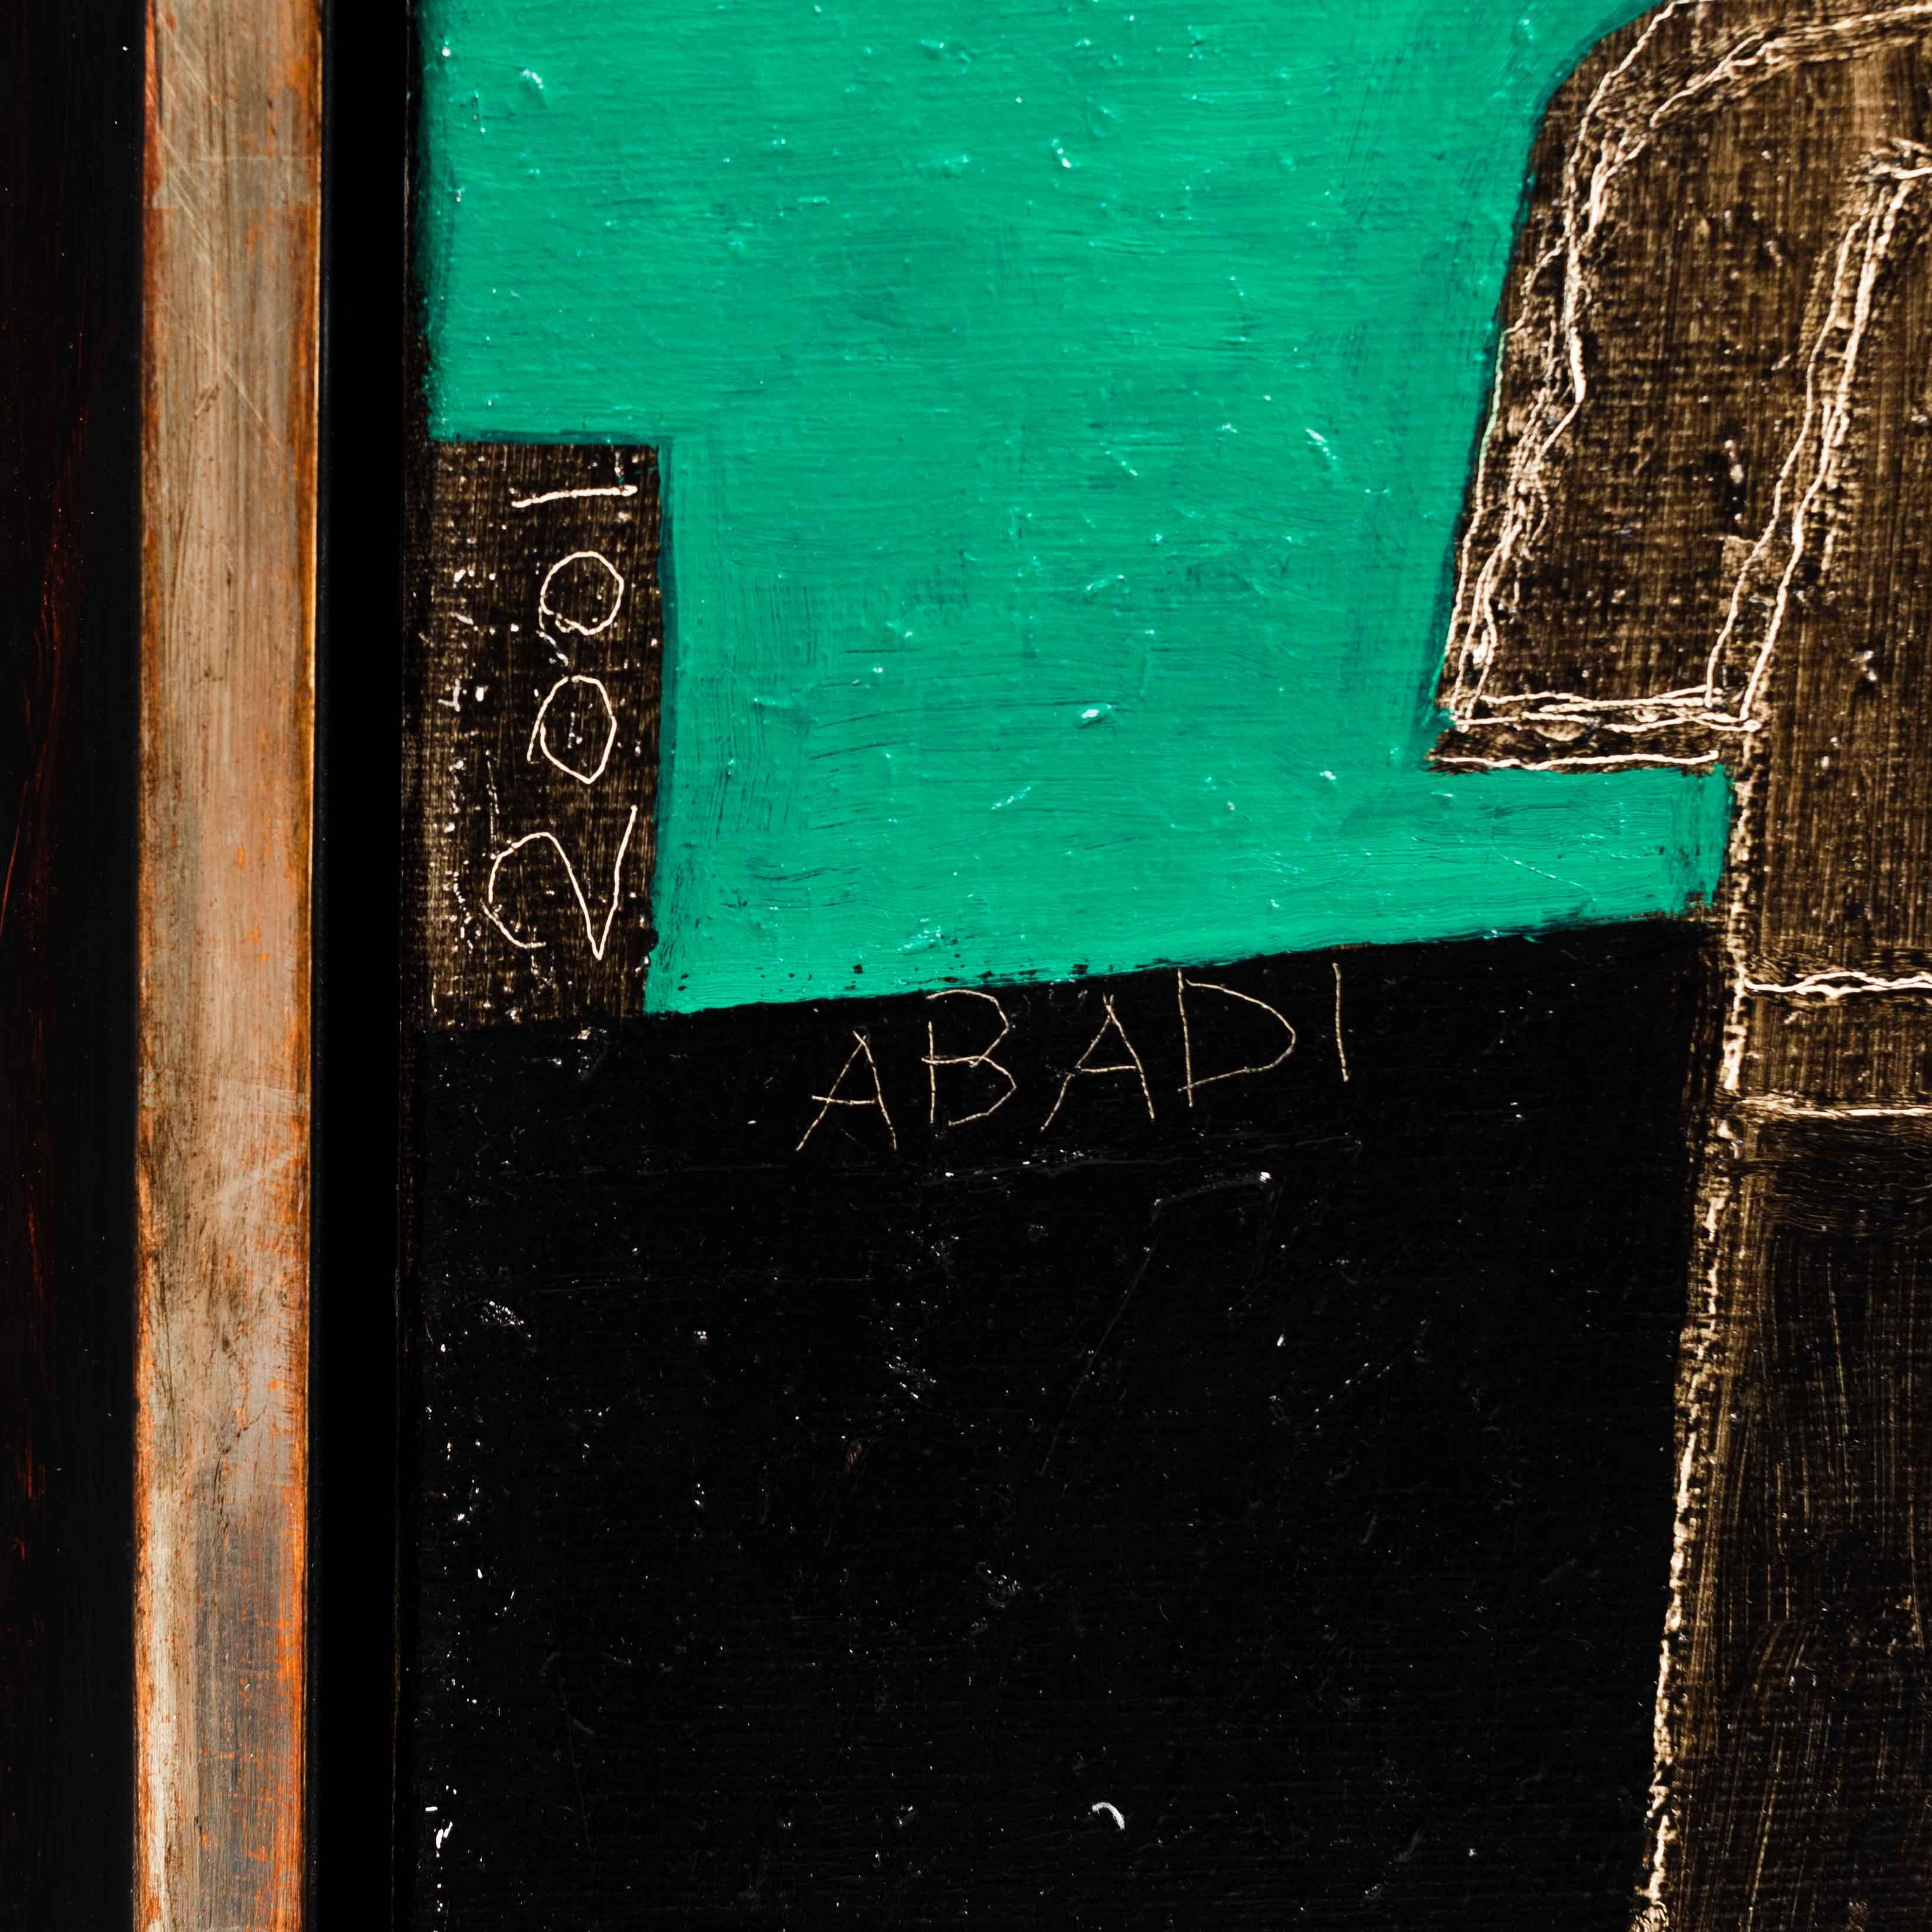 Peinture cubiste à l'acrylique sur toile, Fritzie Abadi New York, 2001

Dans des couleurs fortes et sourdes, des figures et des éléments anguleux sont divisés et réassemblés dans un contexte différent.
Les éléments sont en partie lumineux et